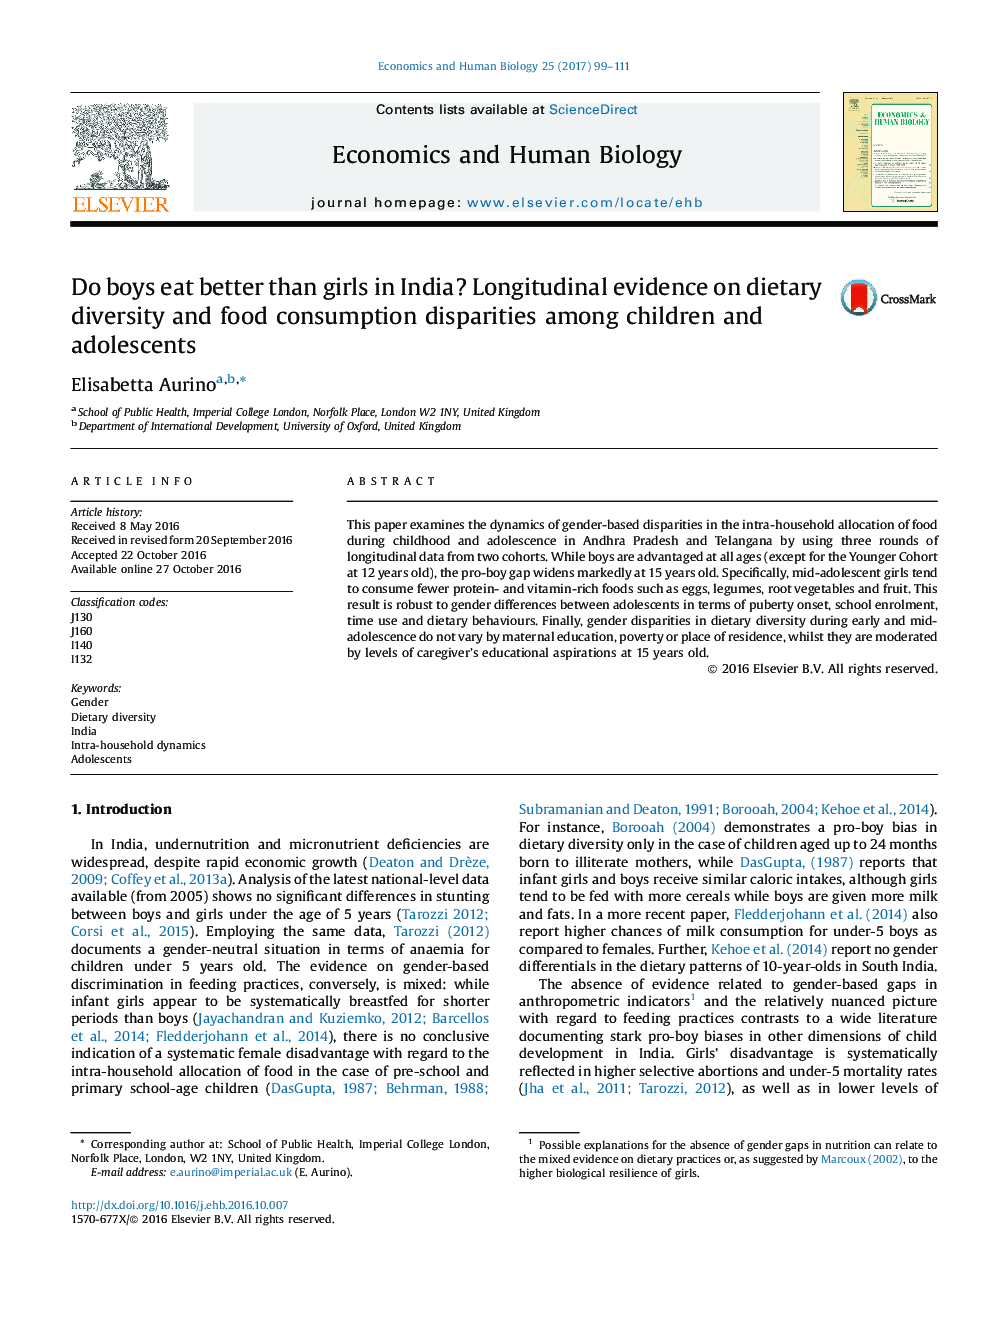 آیا پسران بهتر از دختران در هند می خورند؟ شواهد طولانی در مورد تنوع غذایی و تنوع مصرف مواد غذایی در کودکان و نوجوانان 